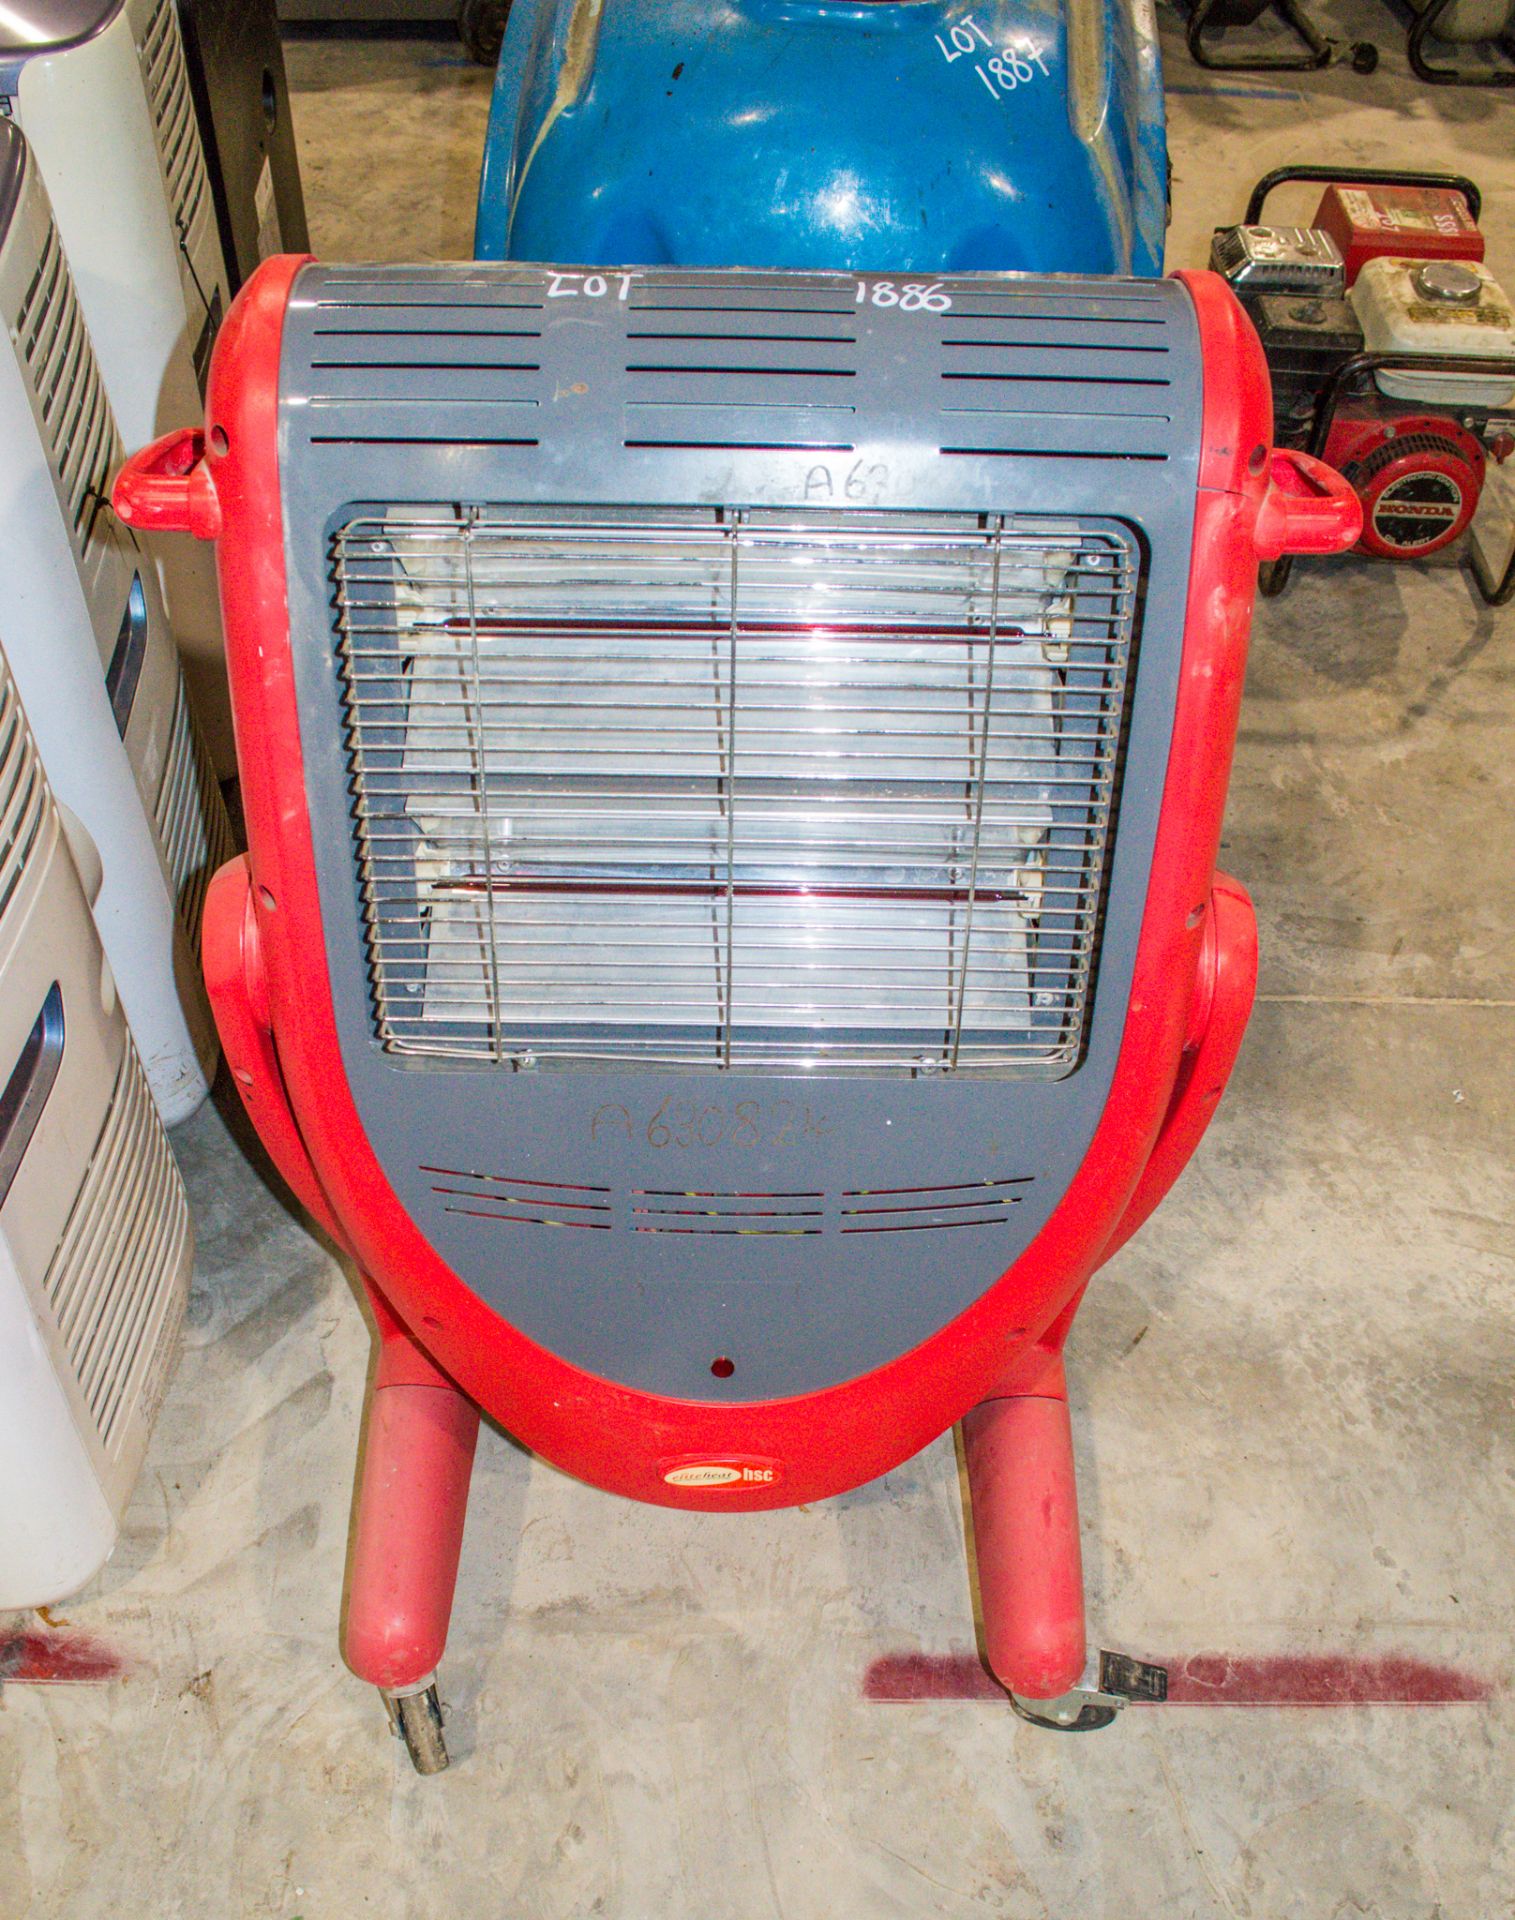 Elite 110v infra red heater A630824